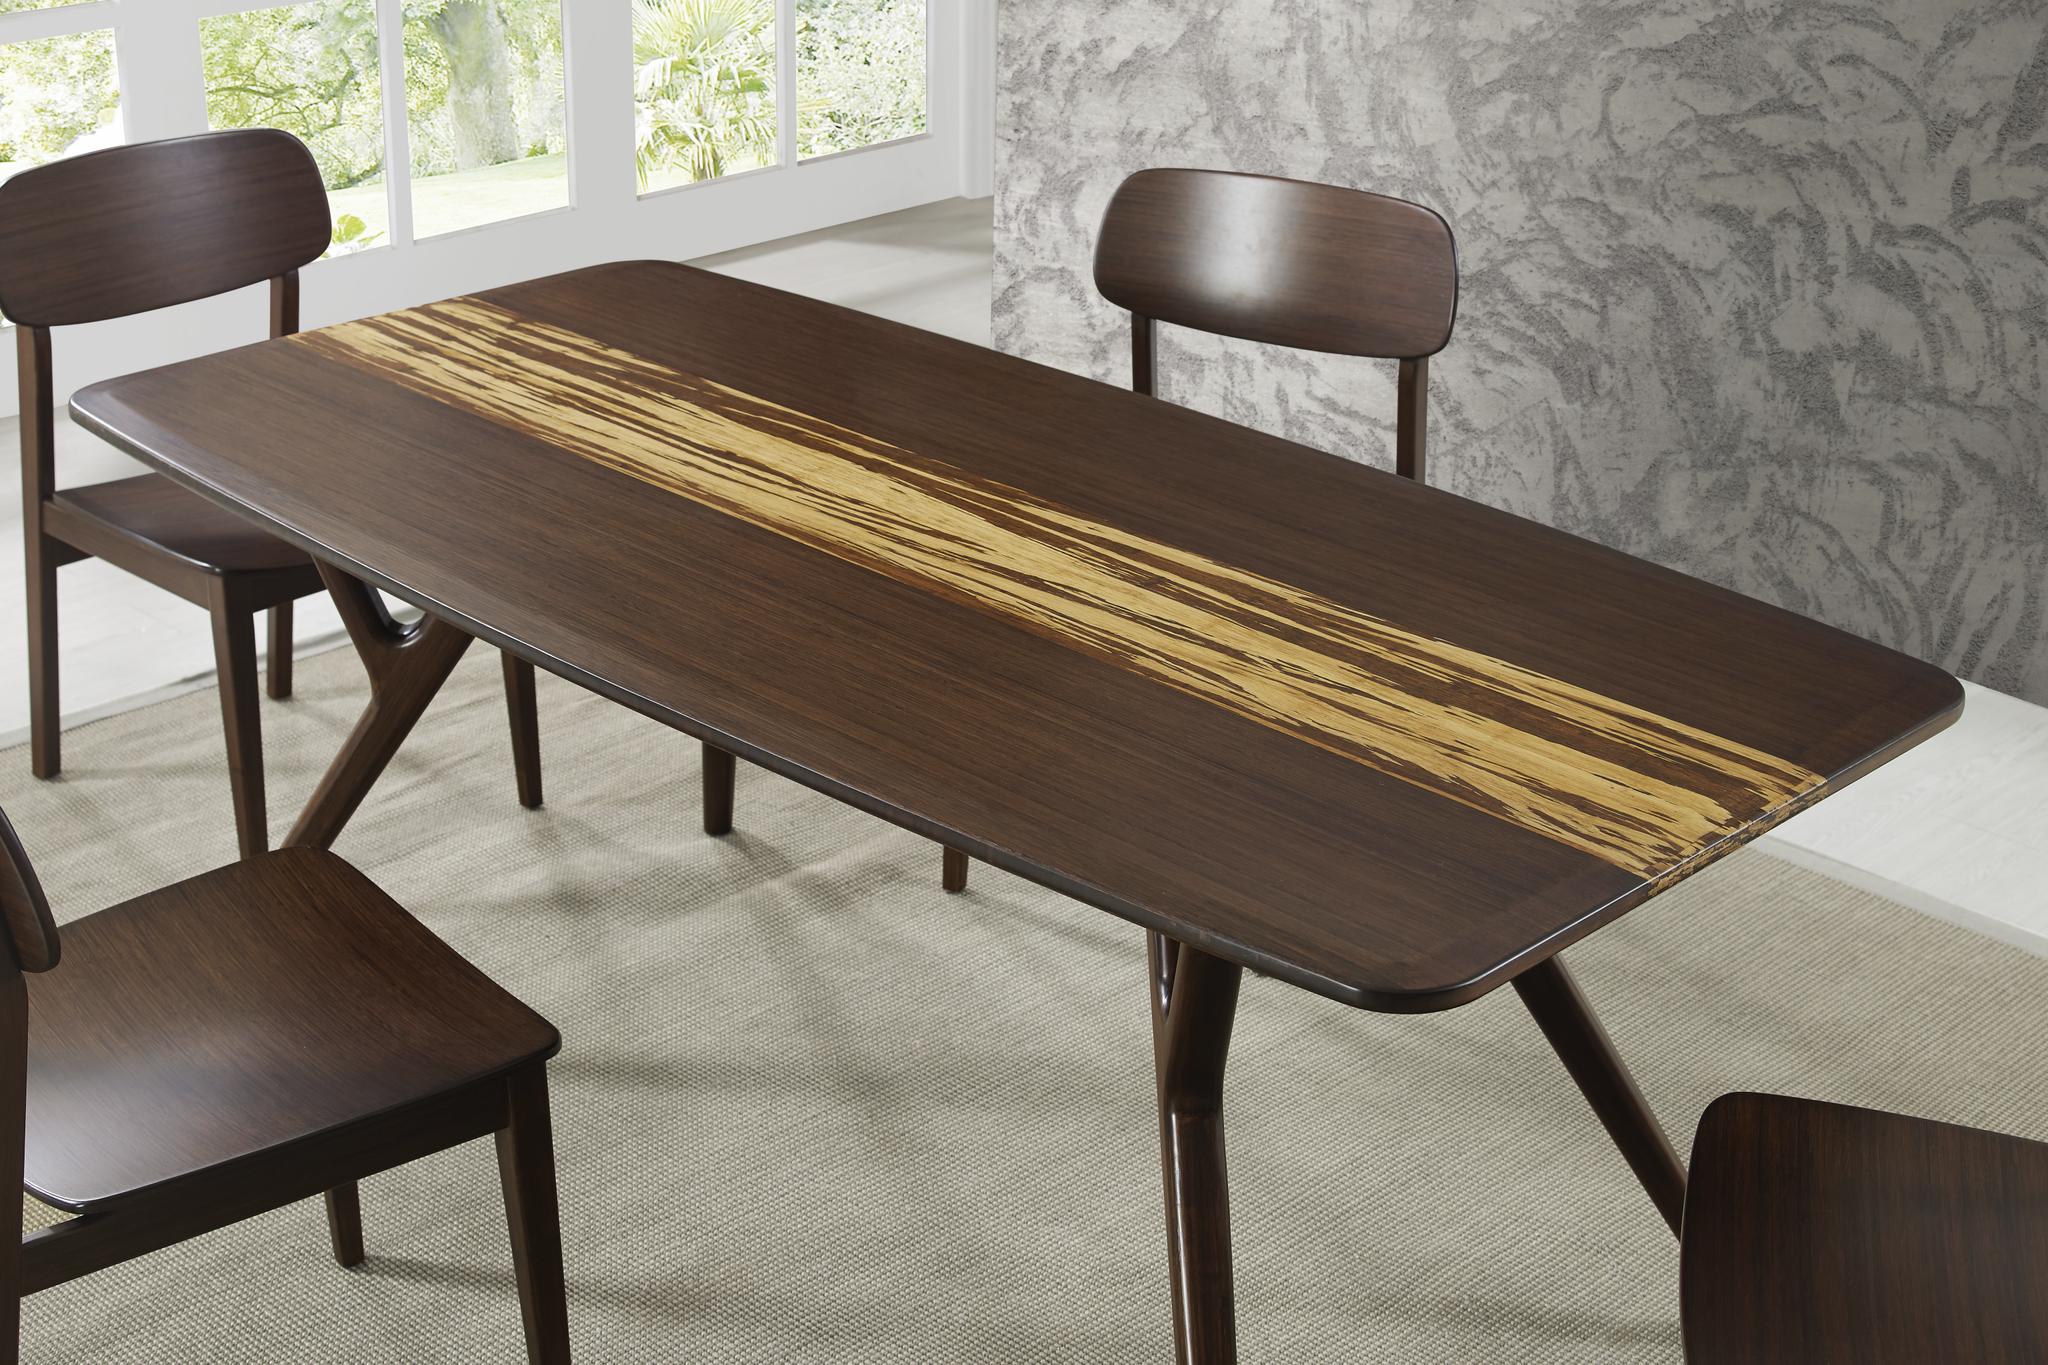 

    
GA0008SA-G0023SA-Set-8 Bamboo Dining Table Set 8Pcs w/Sideboard Sable Azara /Currant by Greenington
